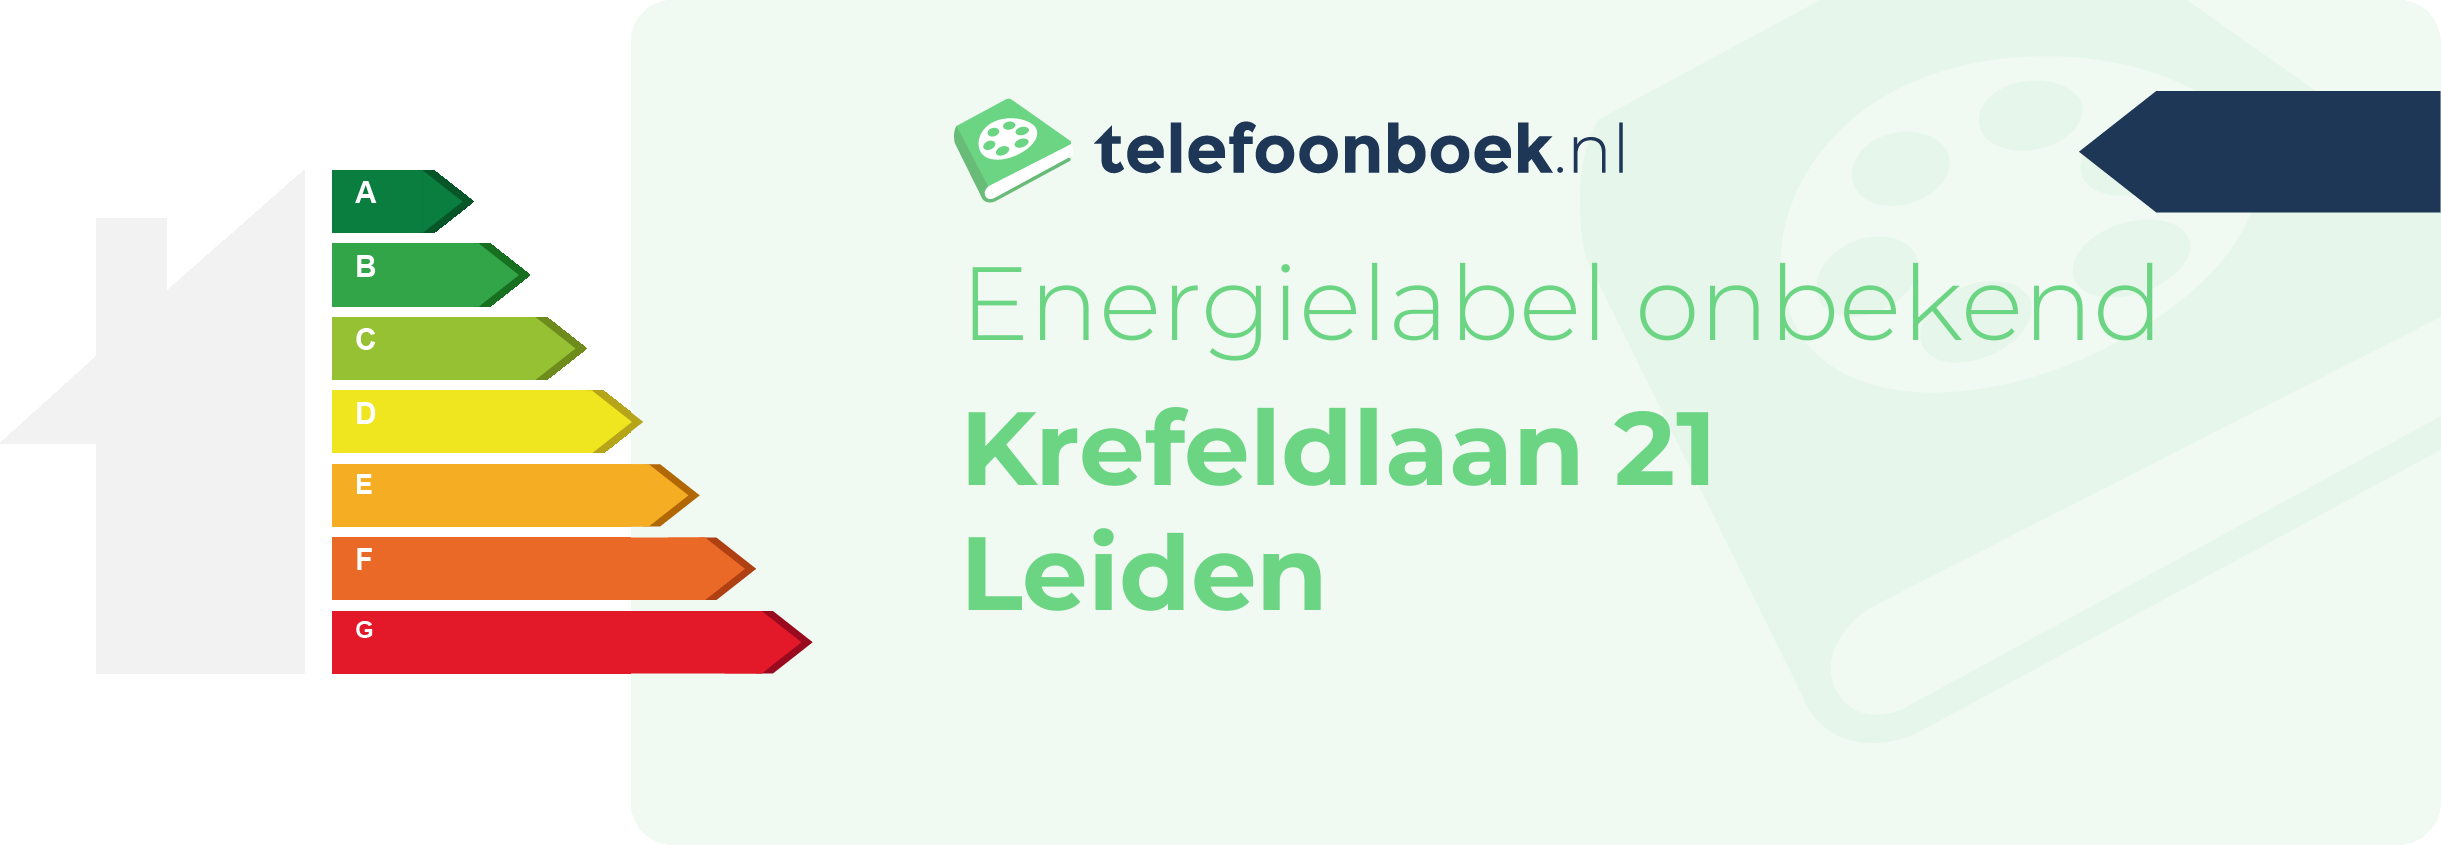 Energielabel Krefeldlaan 21 Leiden